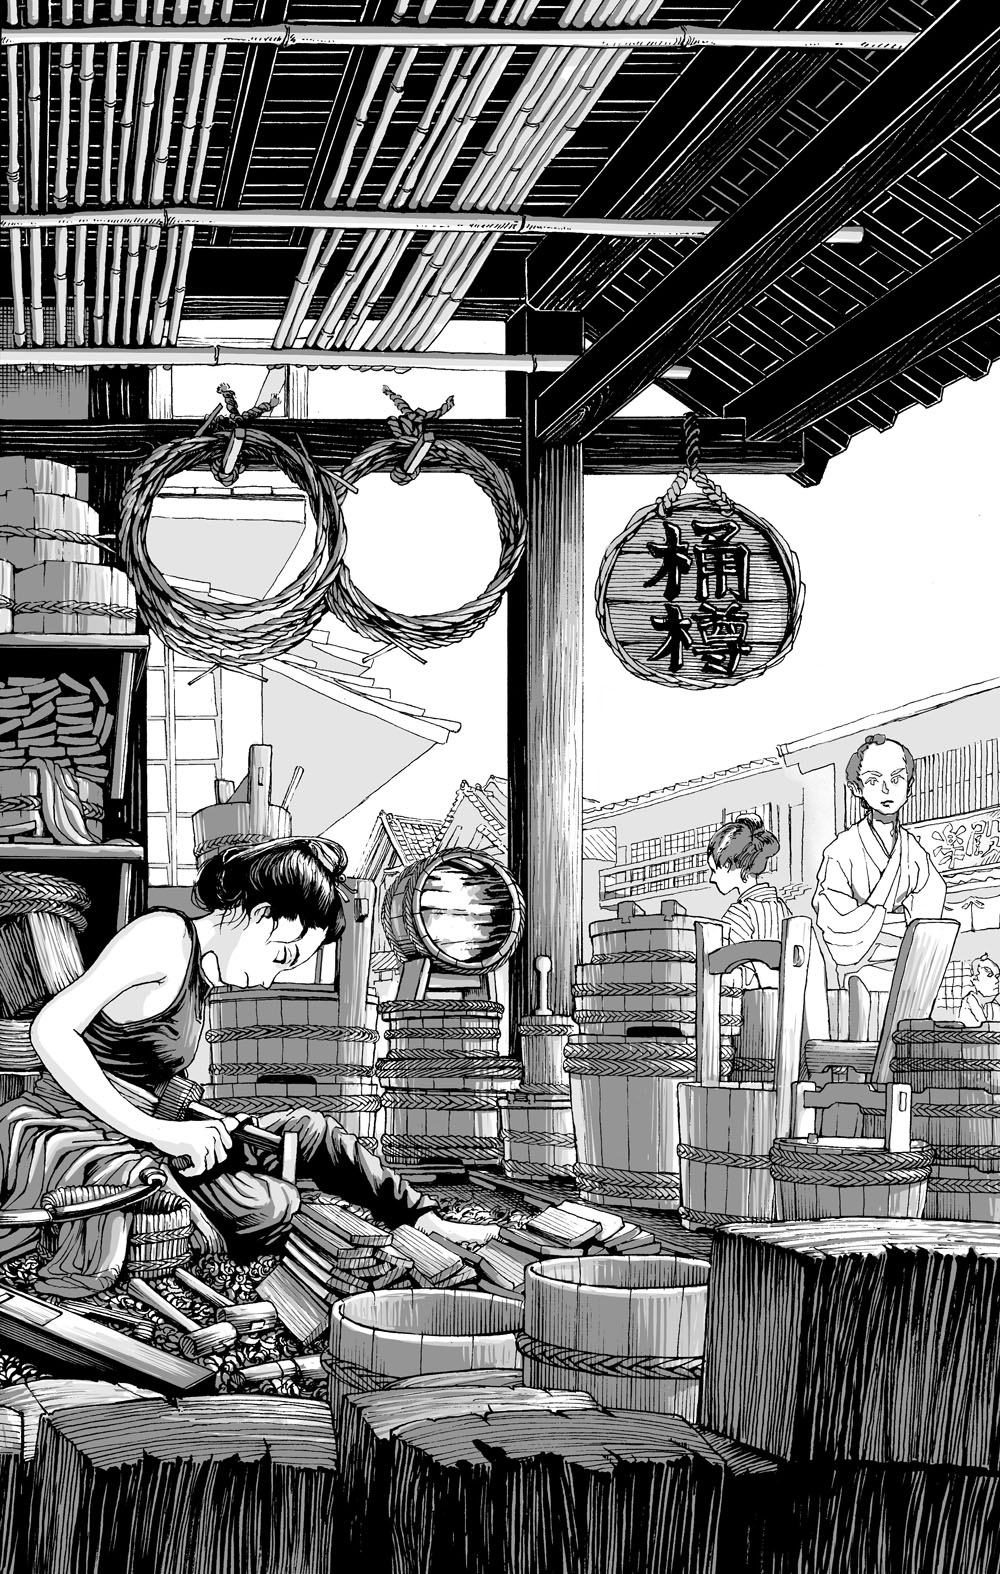 いつの時代も変わらない 職人のカッコよさ 江戸の女職人がひたすらに桶を作るだけの漫画 が 疲れと時間を忘れさせてくれる 1 2 ページ ねとらぼ